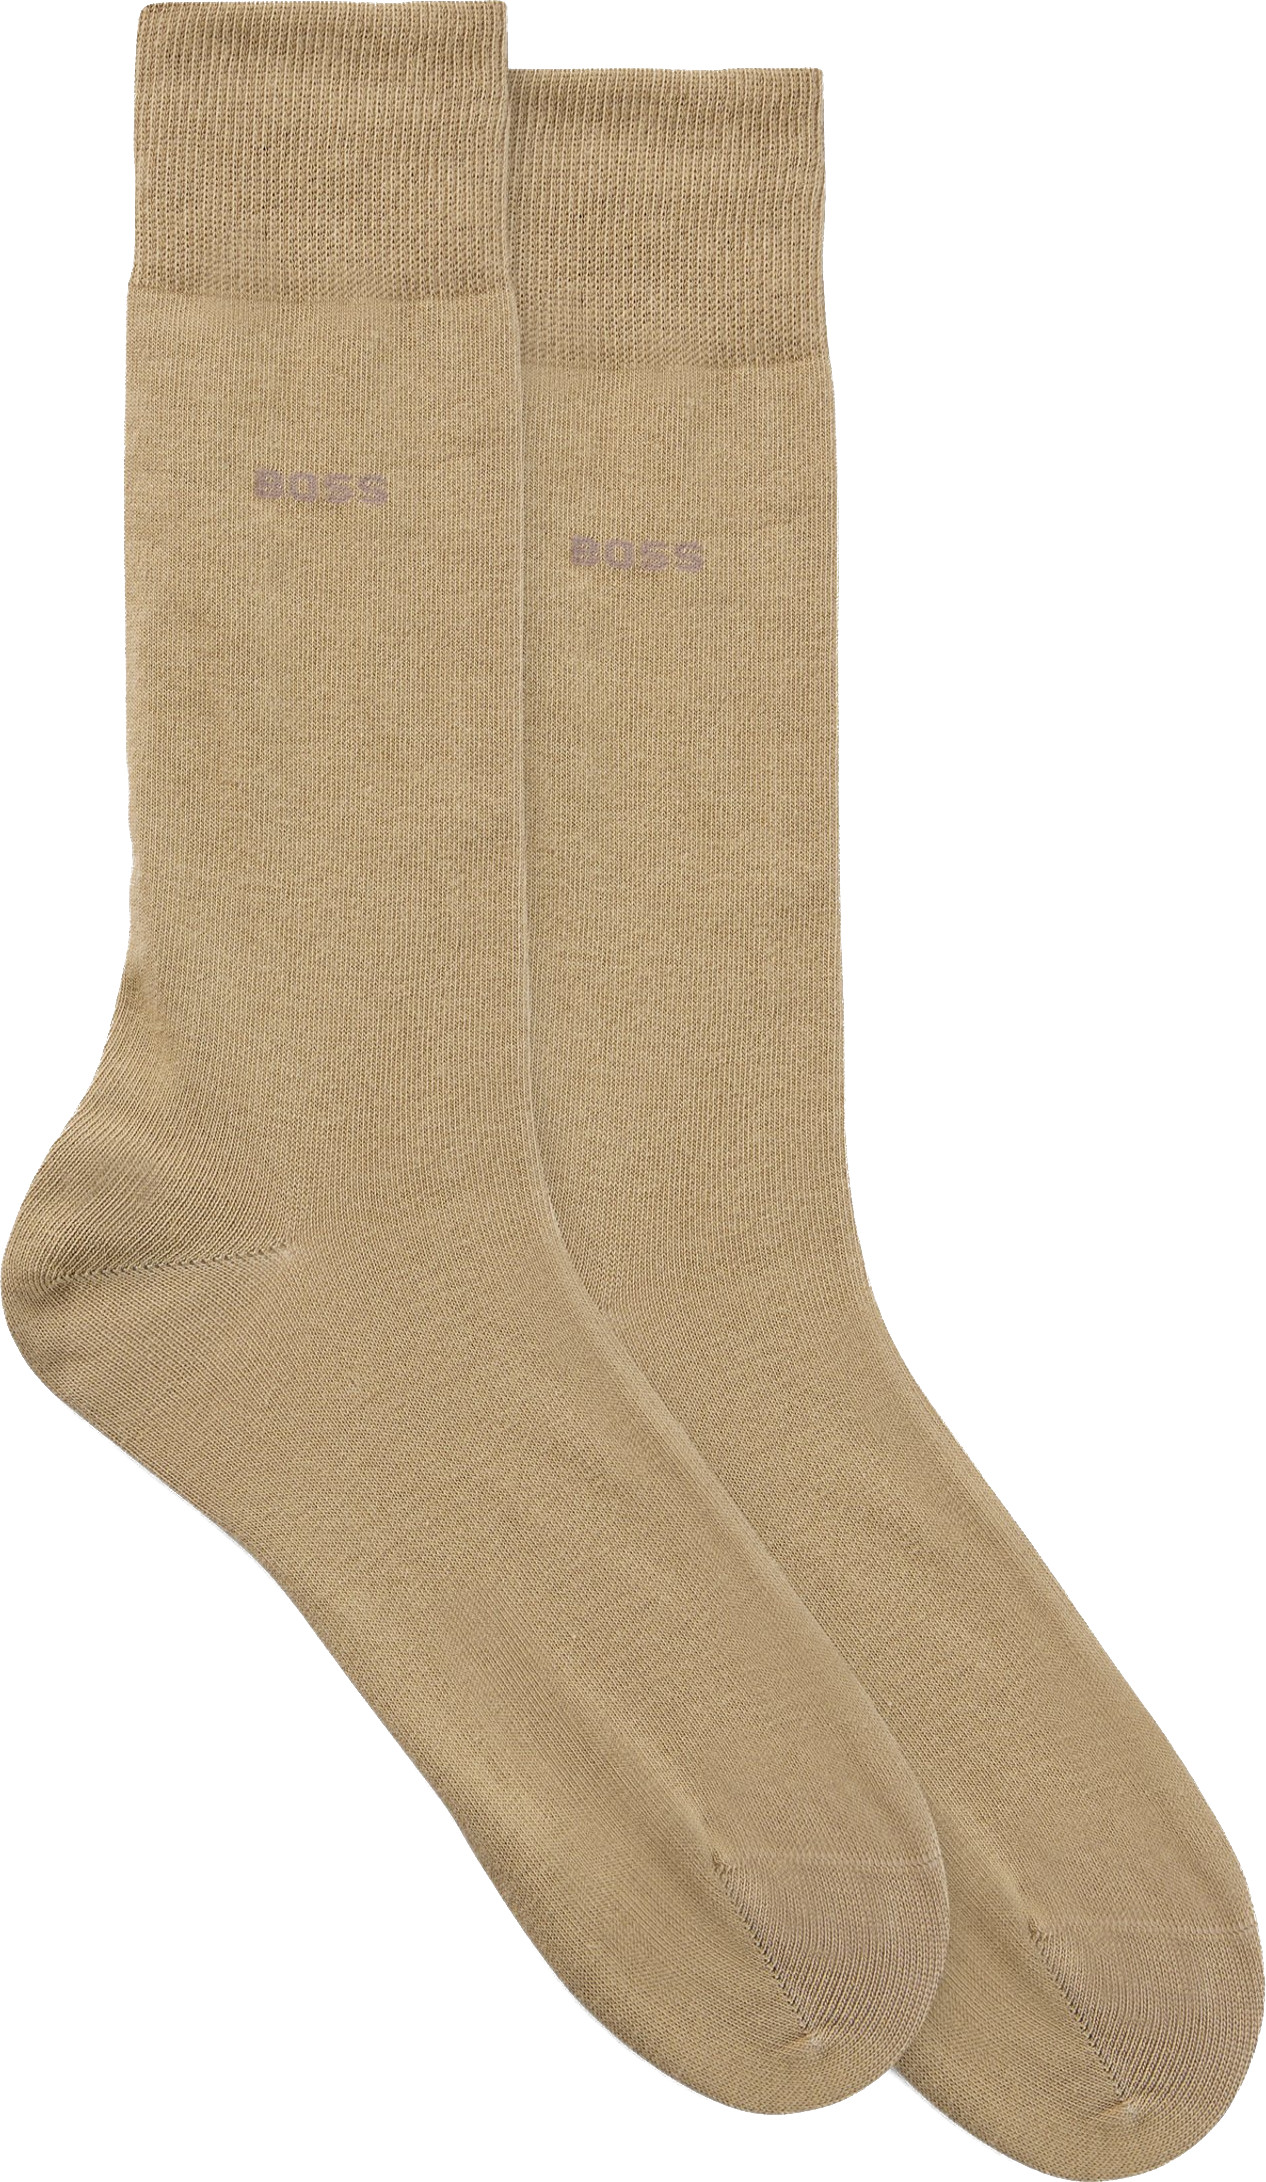 Hugo Boss 2 PACK - pánské ponožky BOSS 50516616-261 39-42